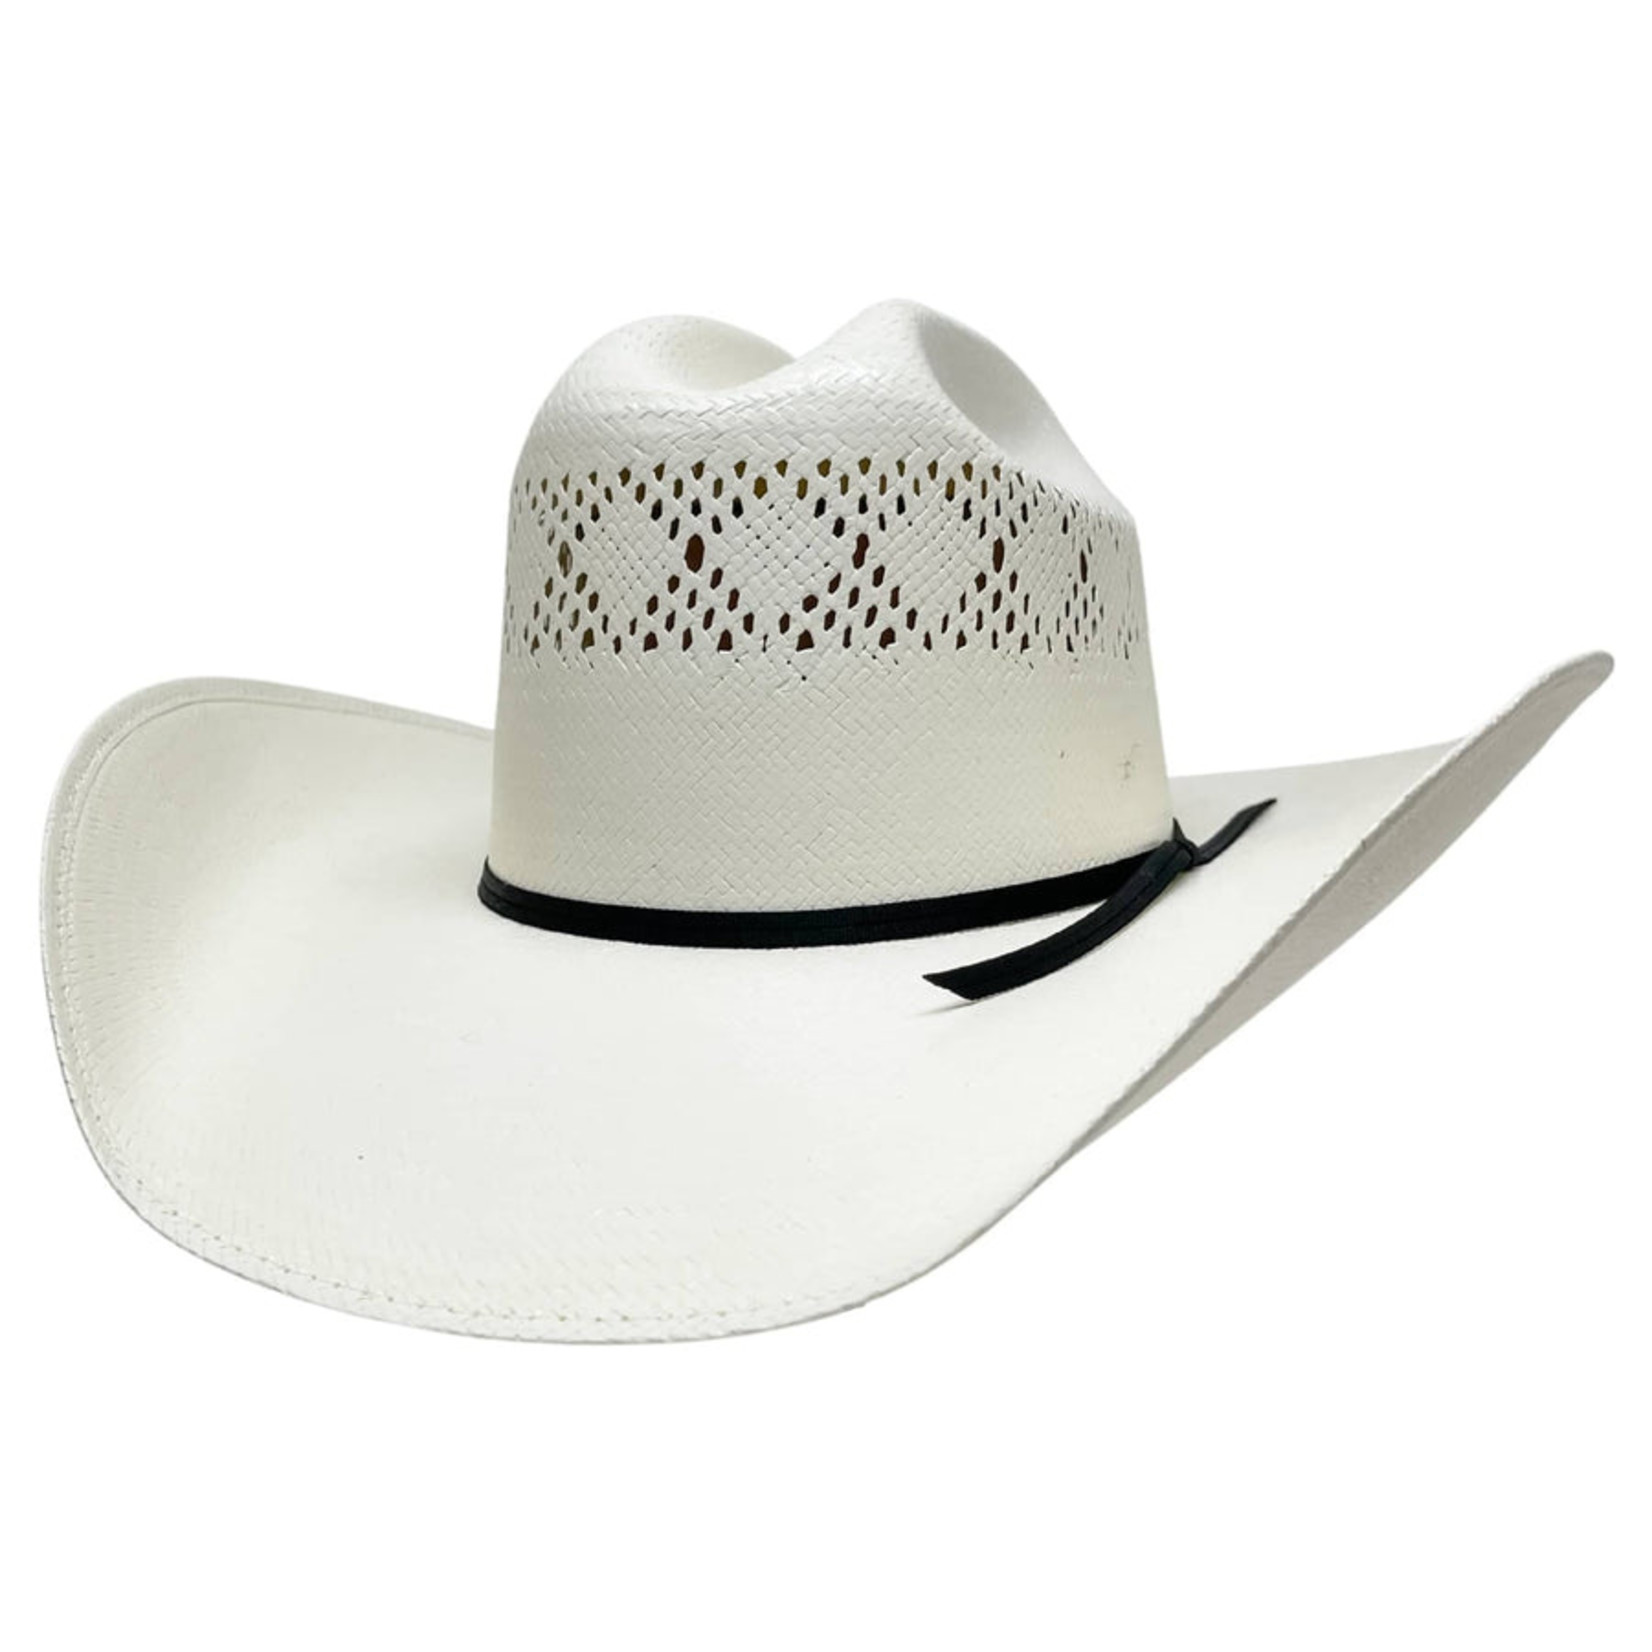 American Hat Makers Bandera Cowboy Straw